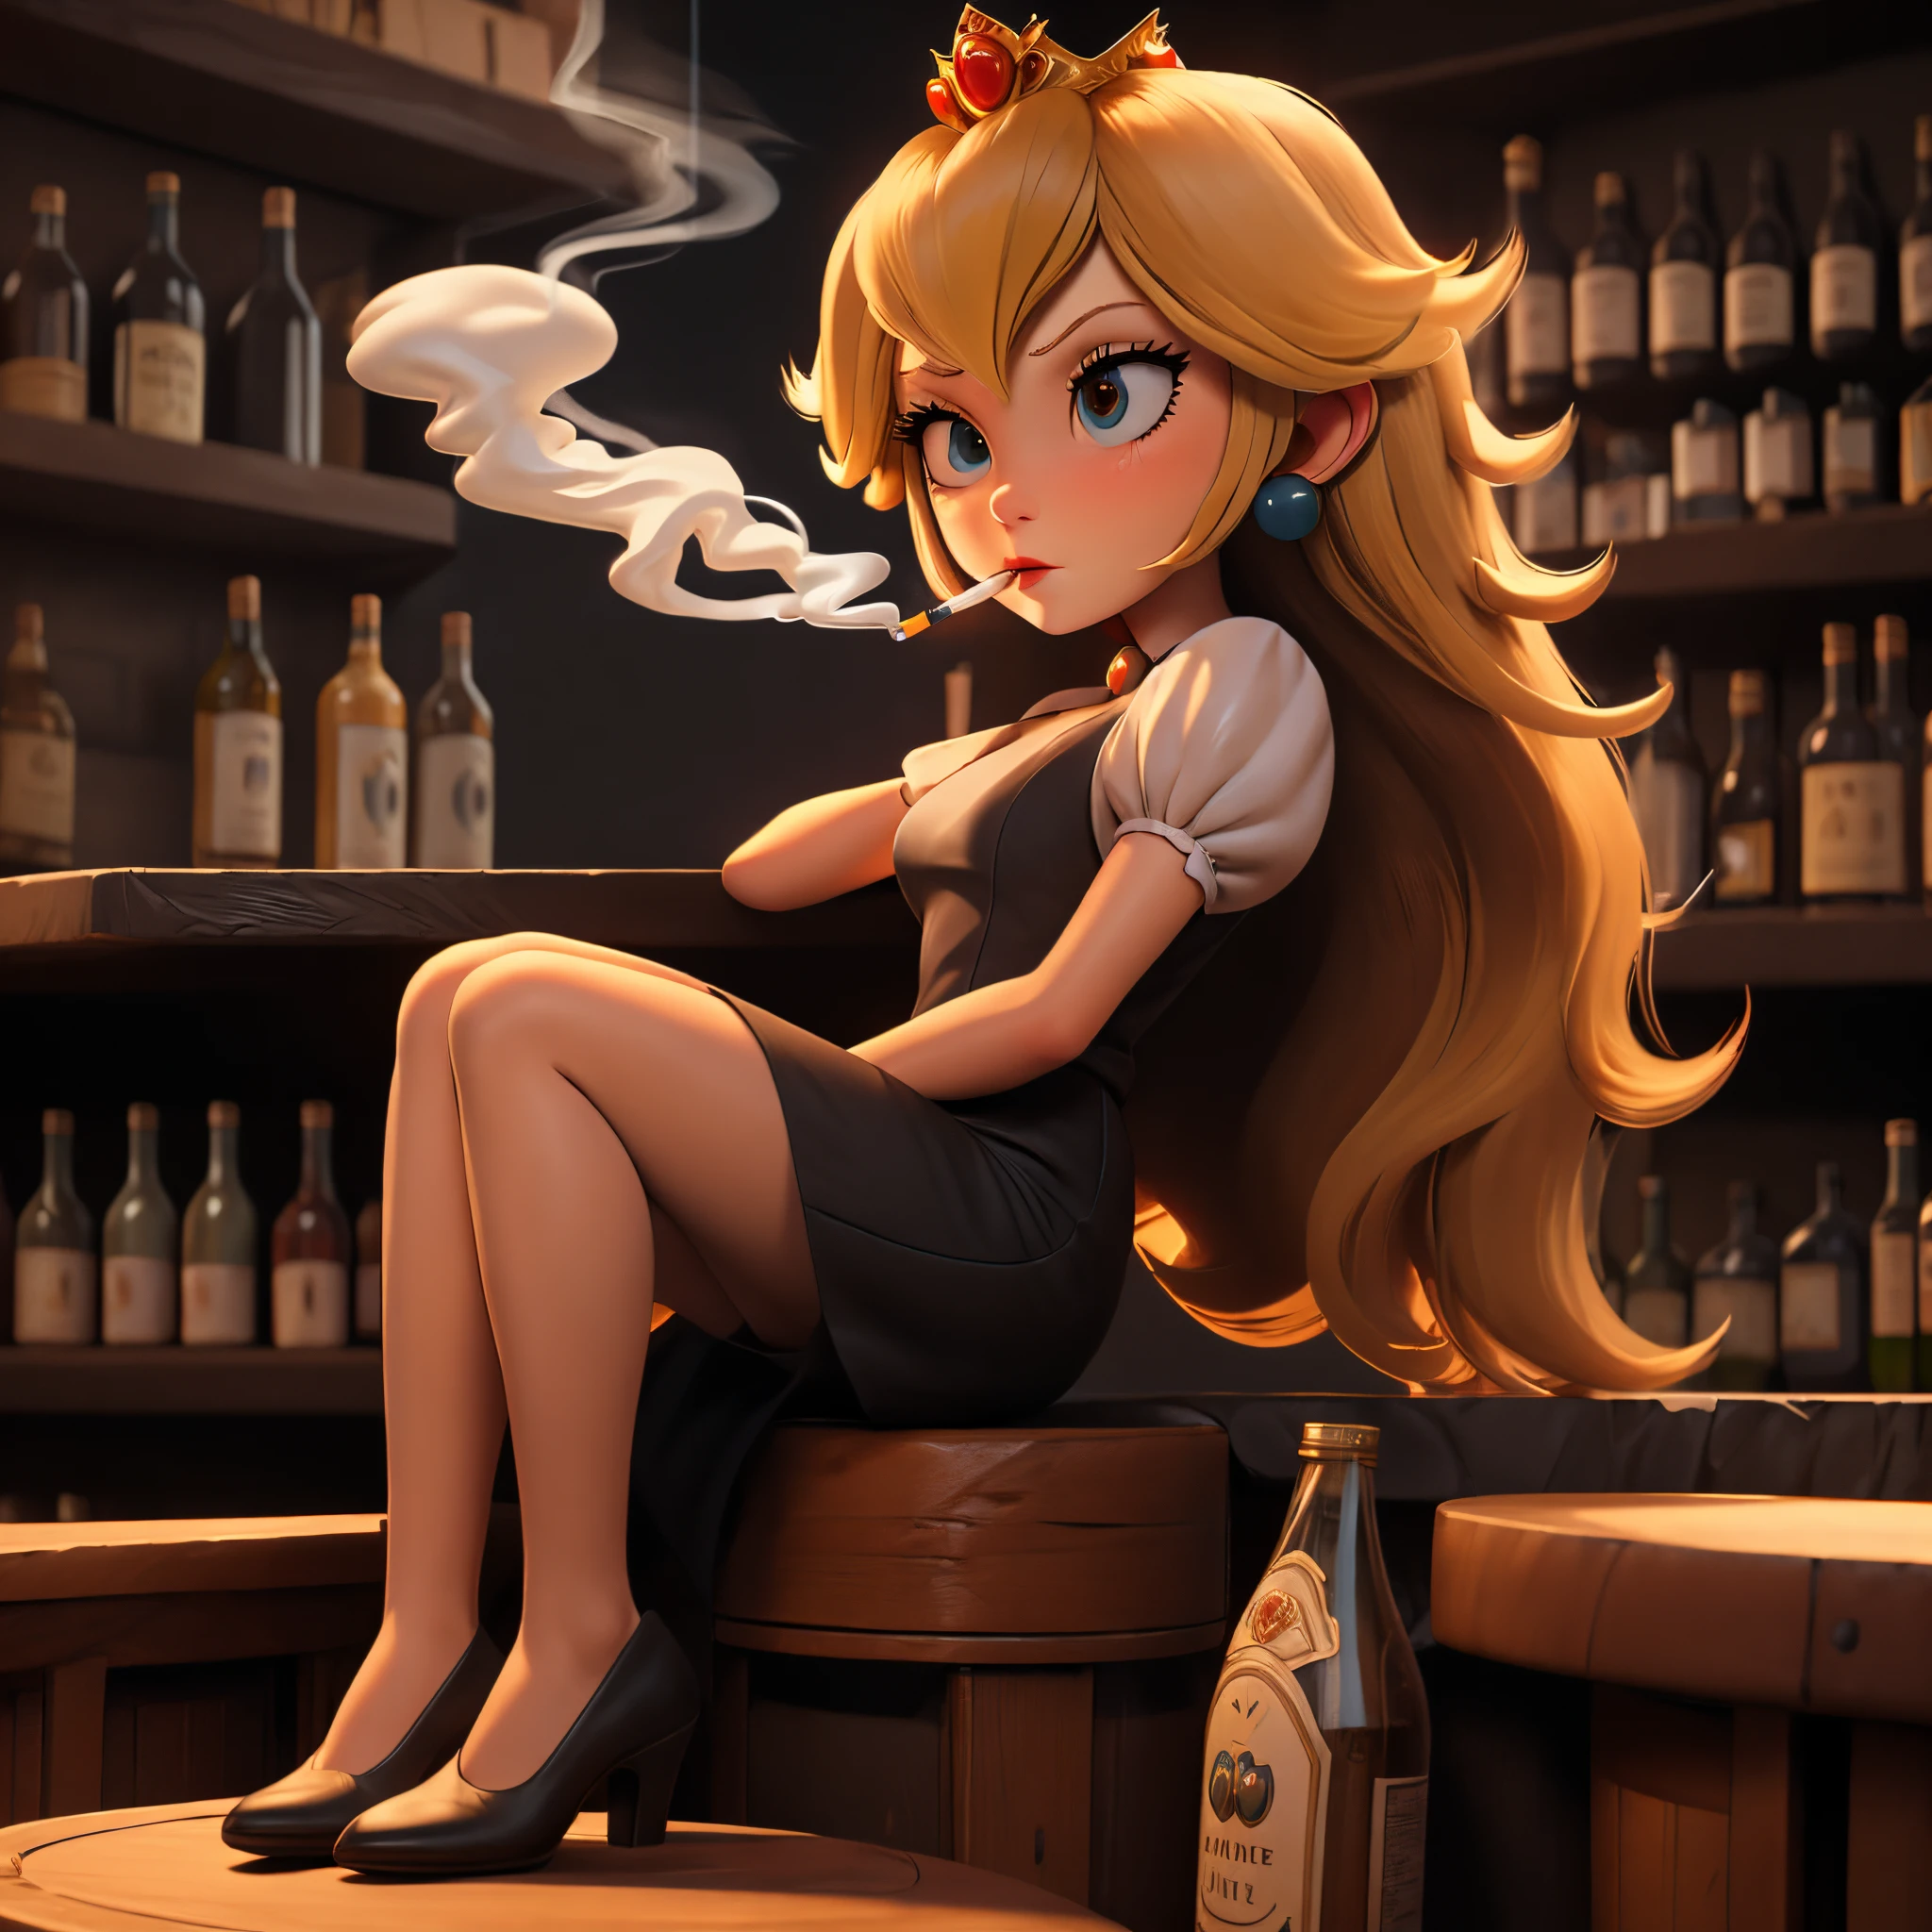 桃子公主在黑暗的酒吧里抽烟, 深思的表情, 商务套装, 黑暗电影, 全身照, 坐在酒吧里, 古董酒瓶,